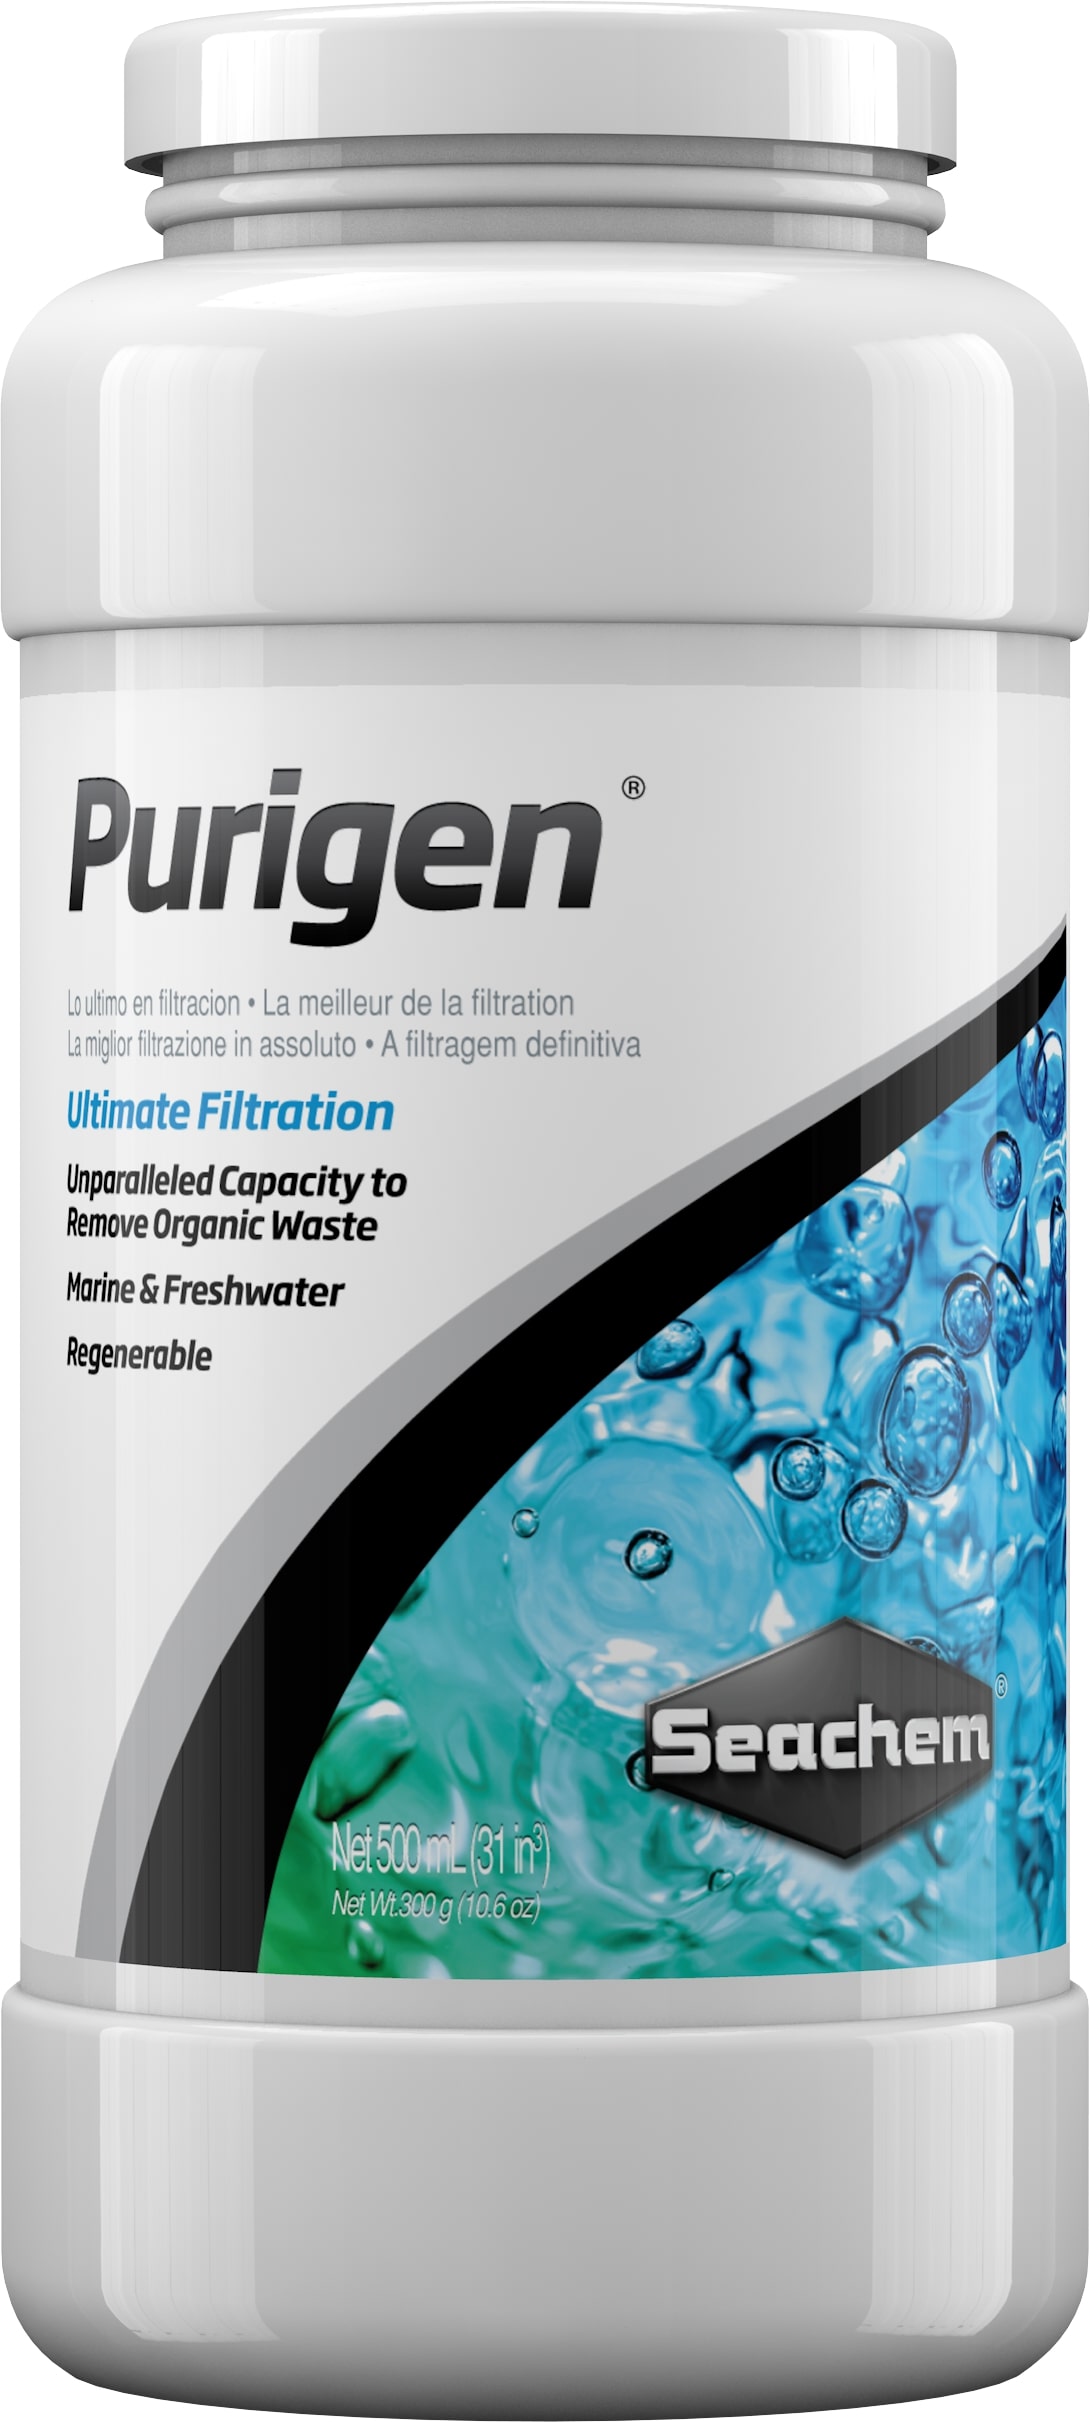 seachem-purigen-500-ml-masse-de-filtration-synthetique-absorbant-les-mauvaises-substances-dans-l-eau-de-l-aquarium